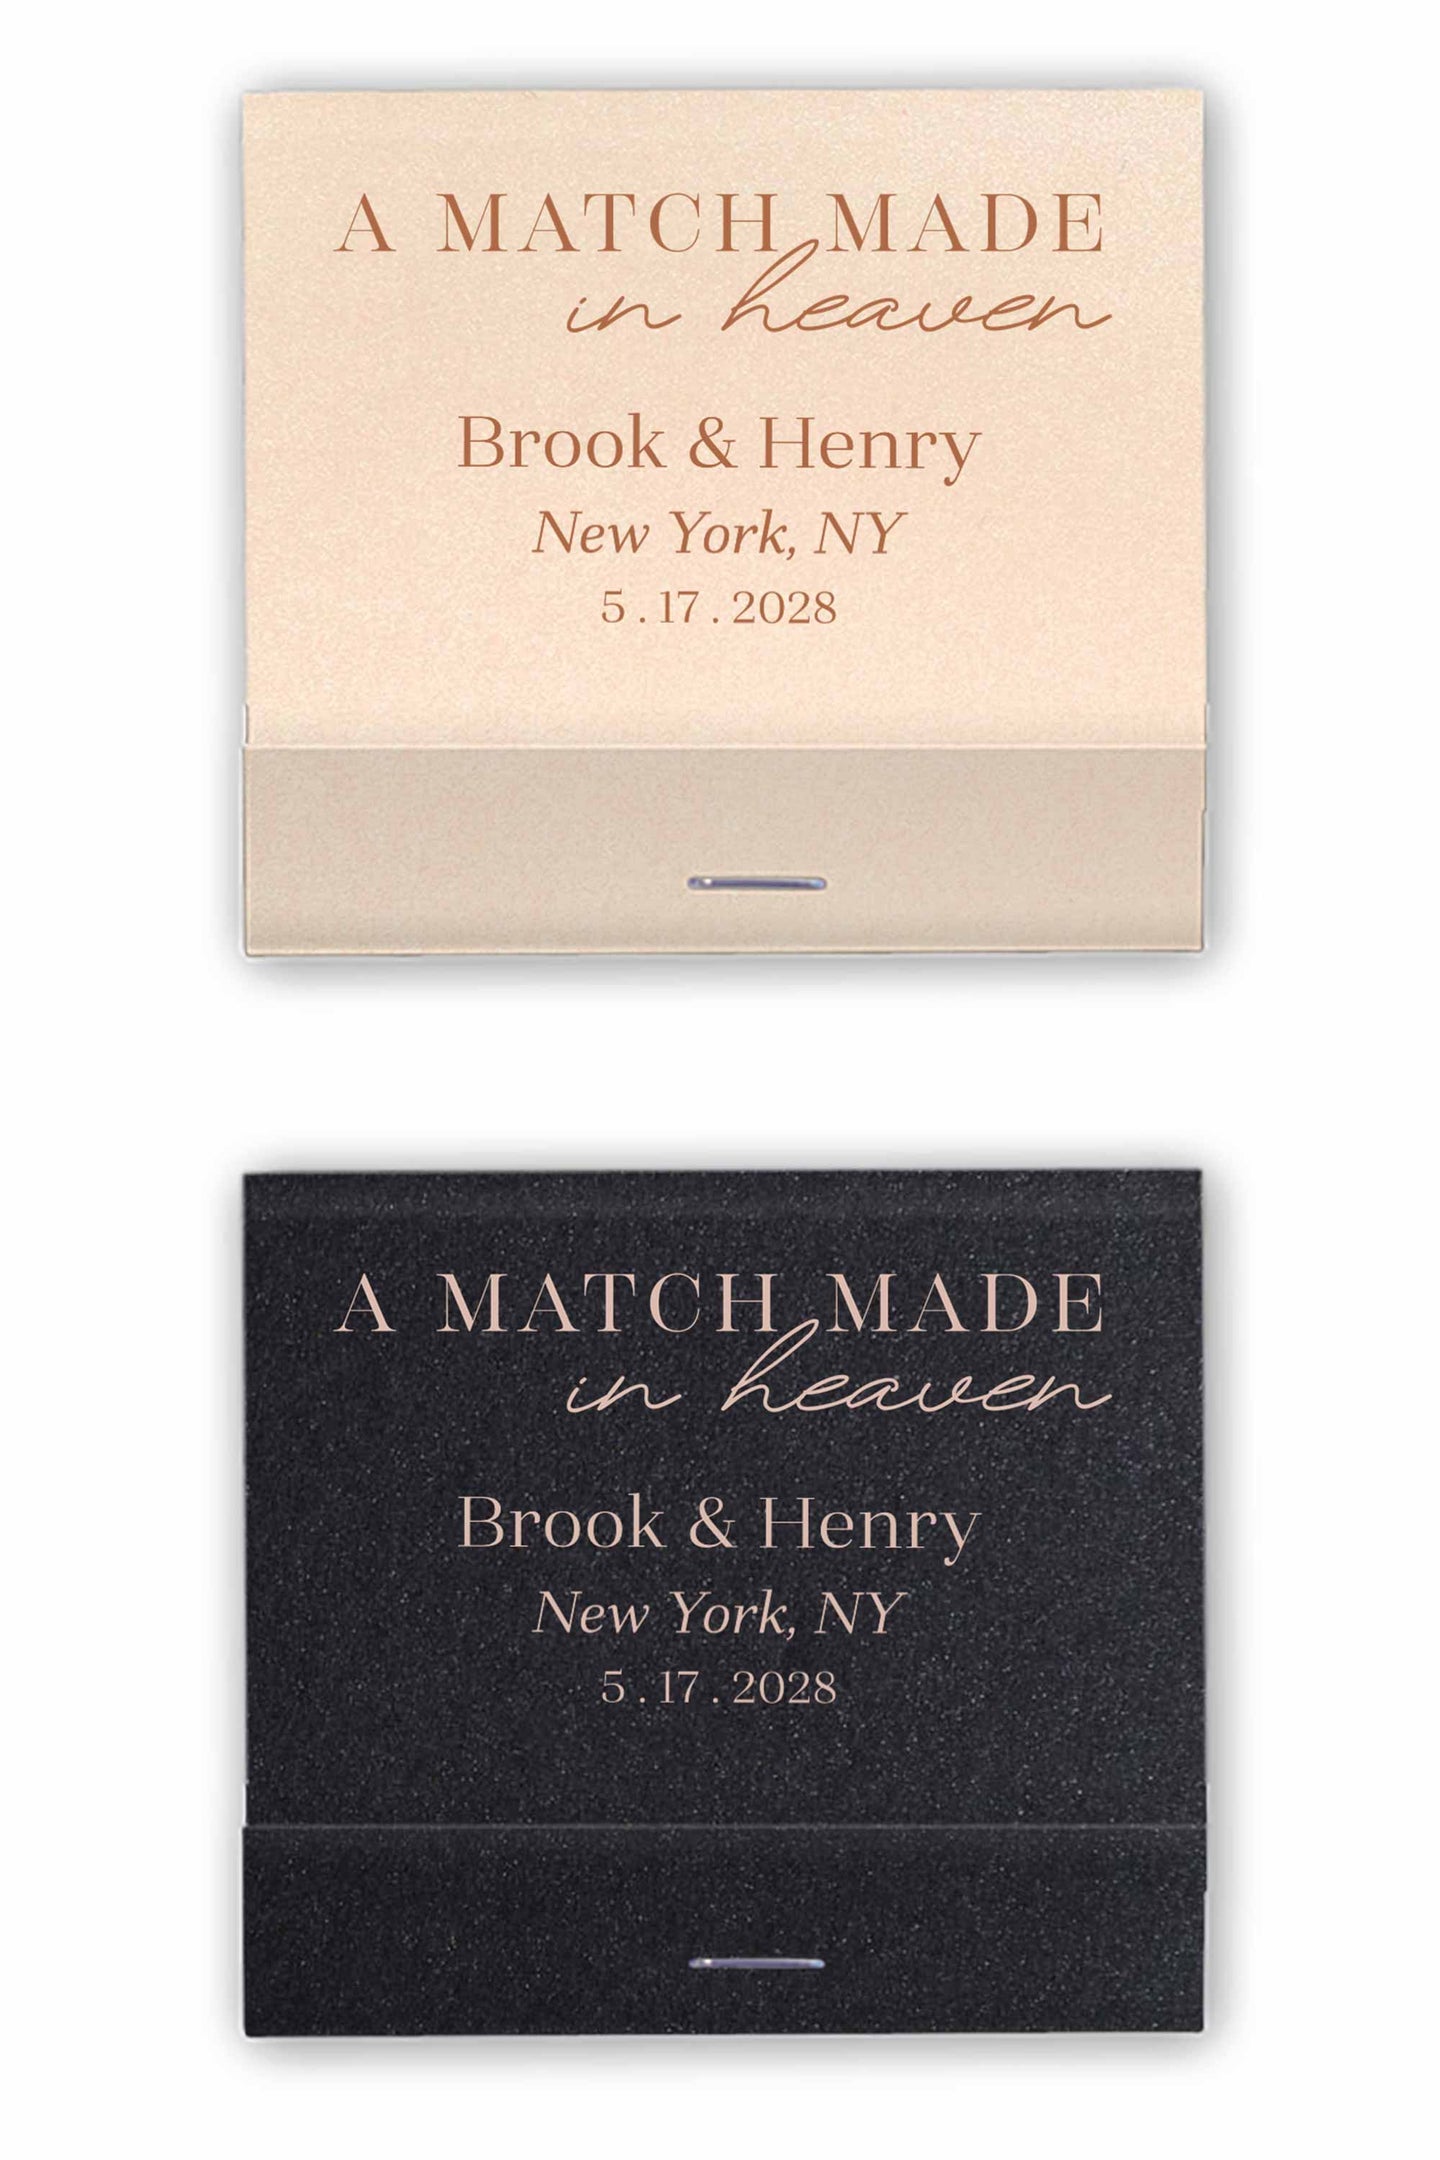 A Match Made in Heaven Matchbooks Custom Wedding Favors Matches